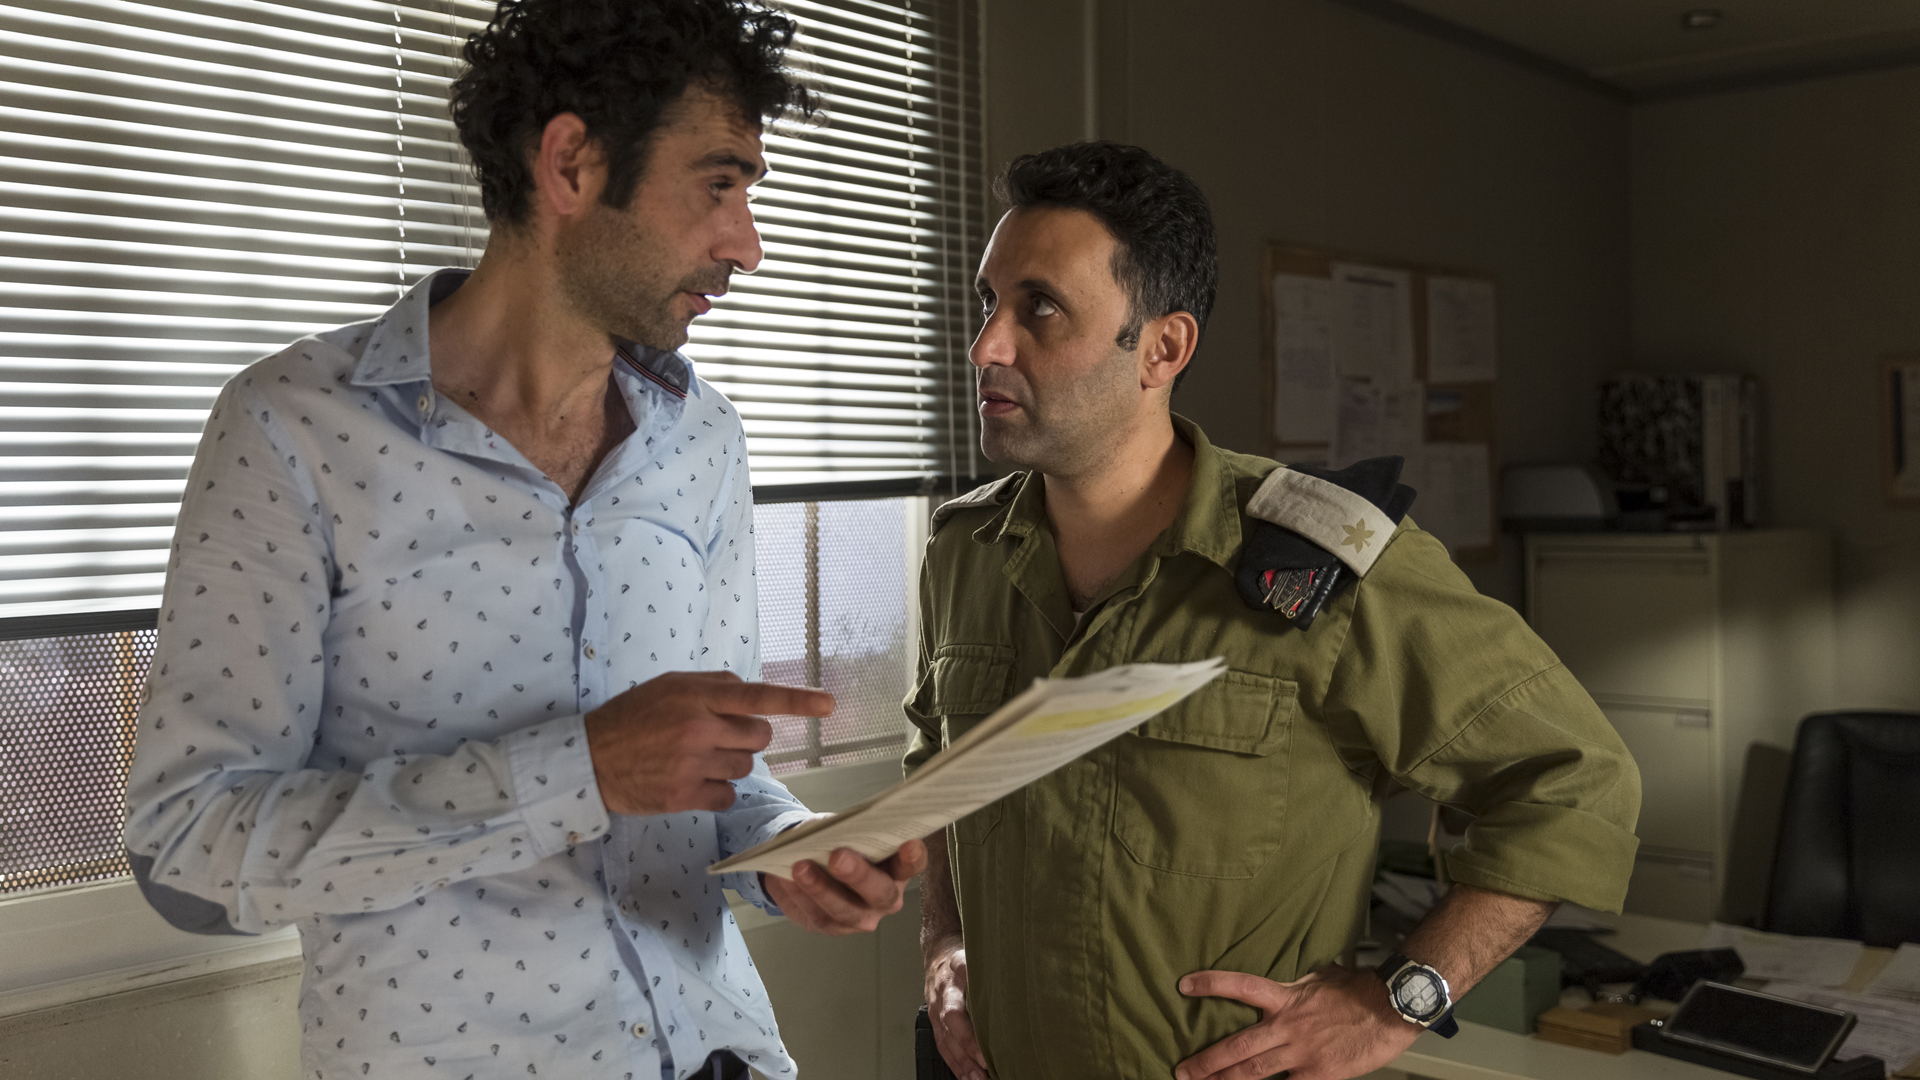 Drehbuchautor Salam (Kais Nashif) greift auf die Einfälle des israelischen Grenzoffiziers Assi (Yaniv Biton) zurück